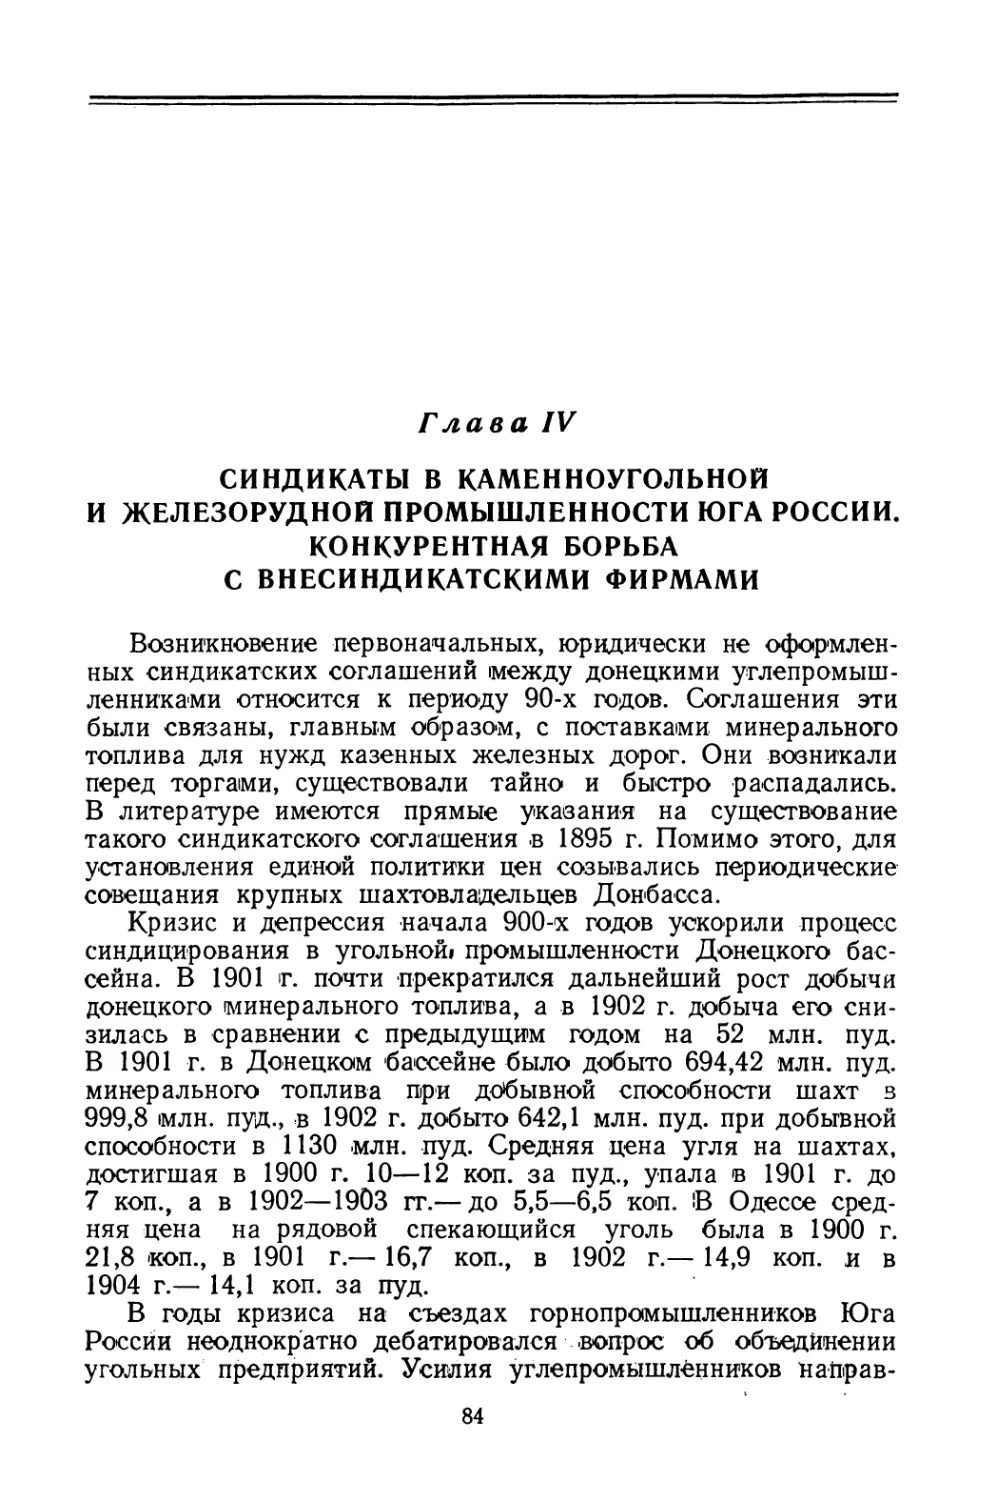 Глава IV. Синдикаты в каменноугольной и железорудной промышленности Юга России. Конкурентная борьба с внесиндикатскими фирмами